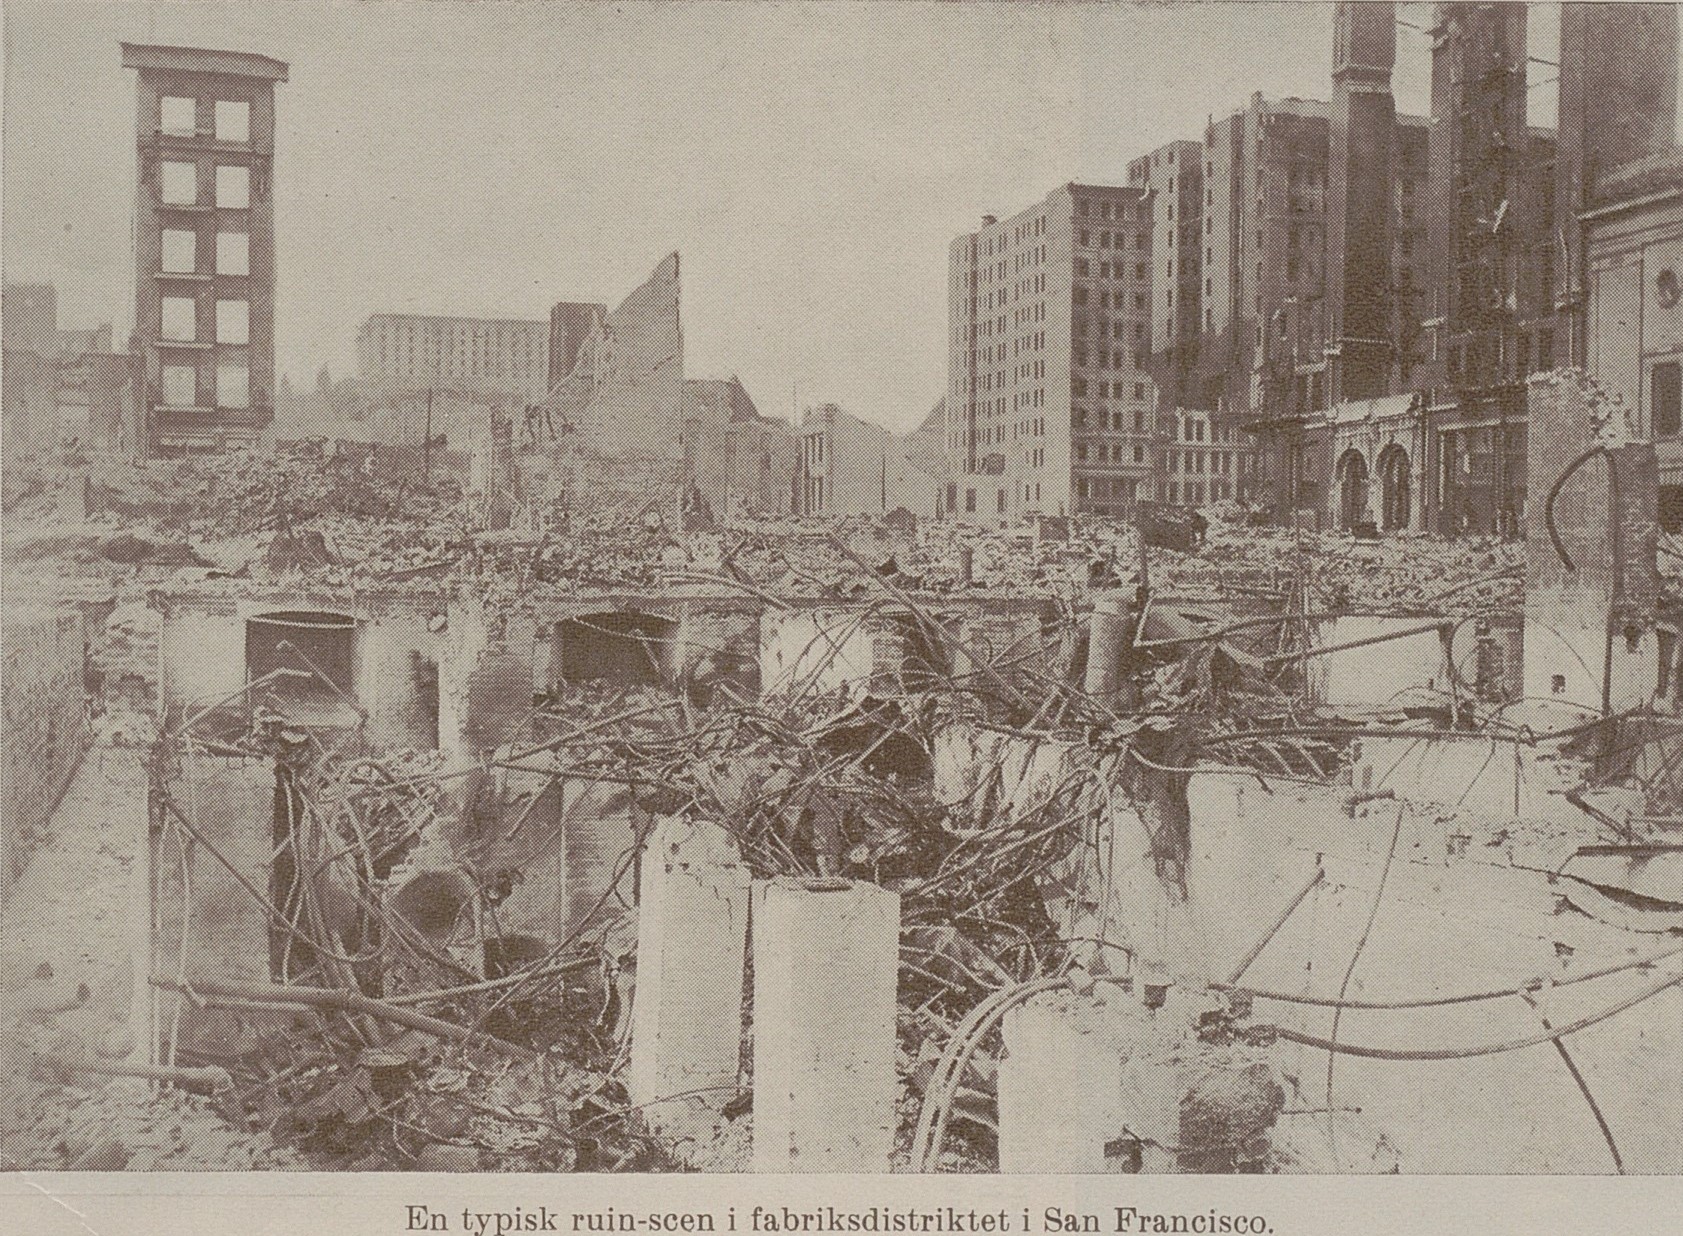 Fotografi av ruiner i San Francisco efter den stora jordbävningen. 